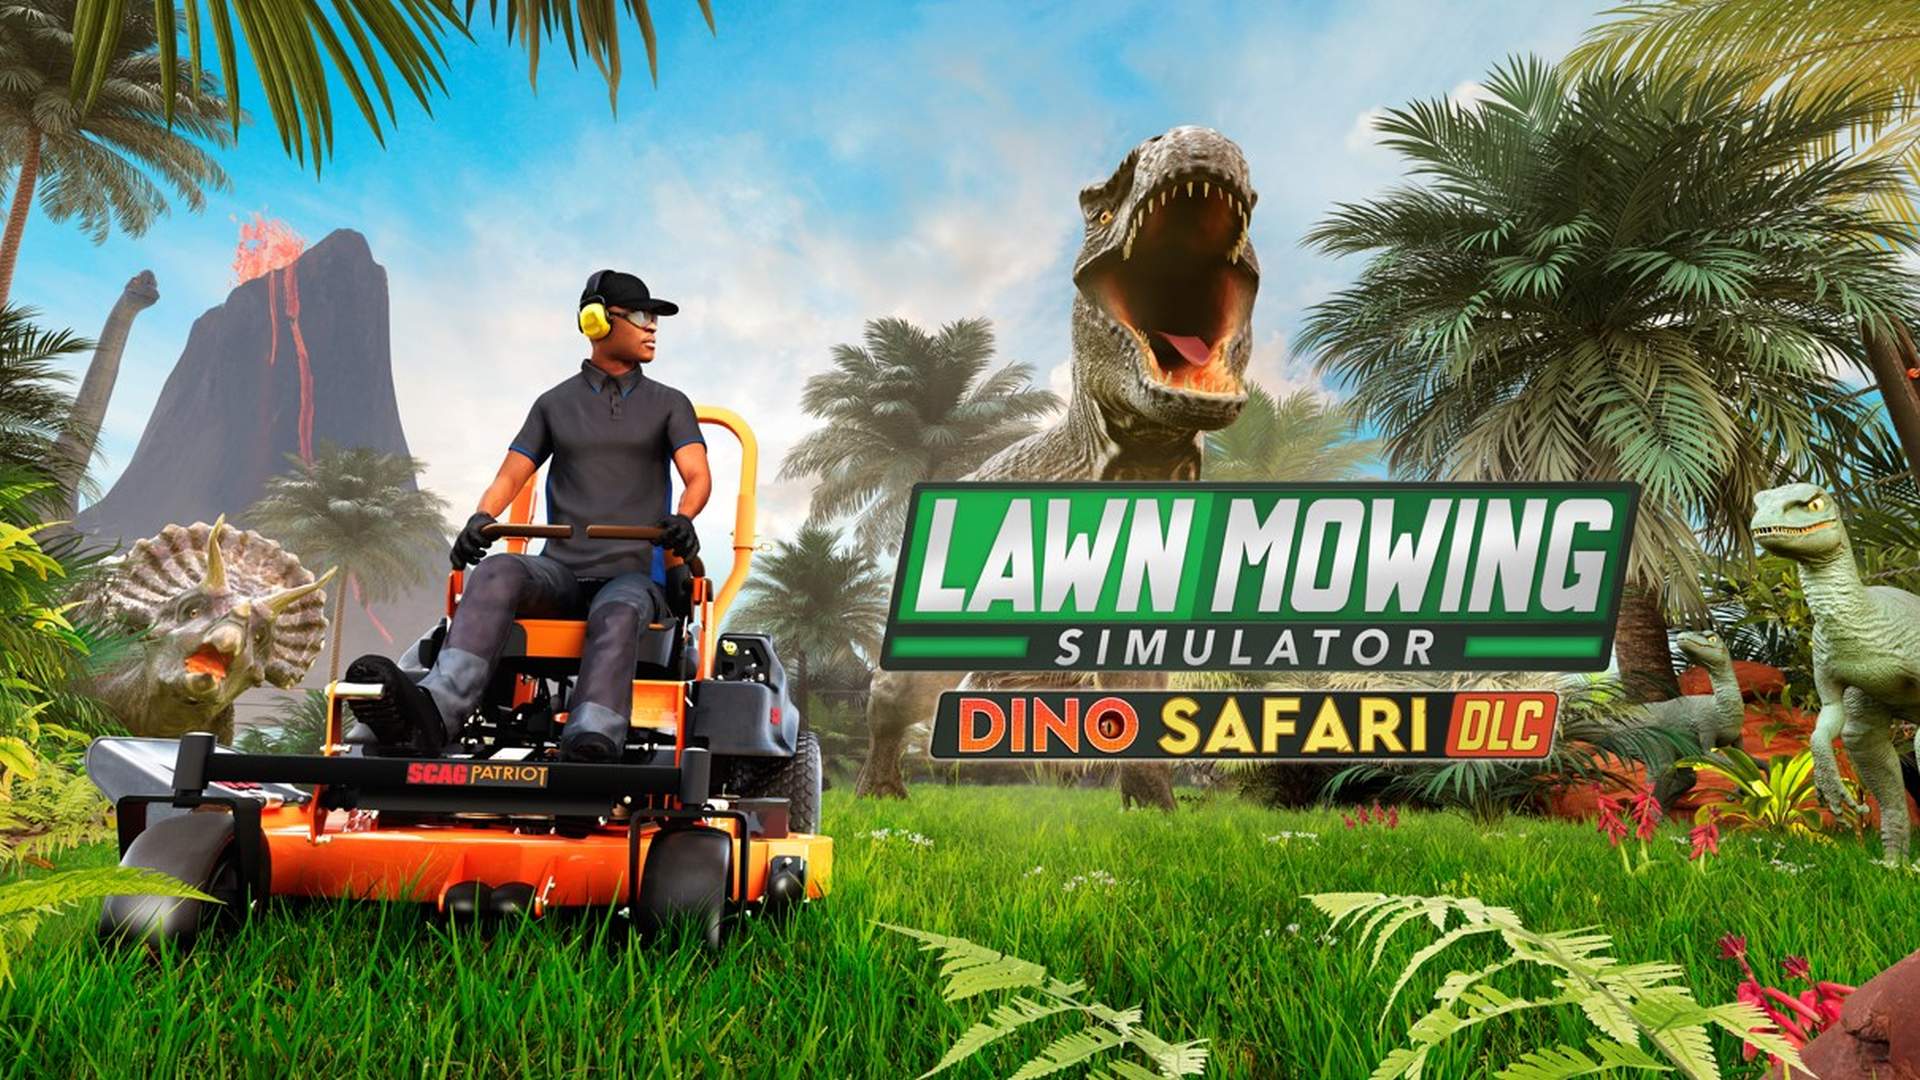 Lawn Mowing Simulator - Dino Safari DLC | Curve Games, Skyhook Games